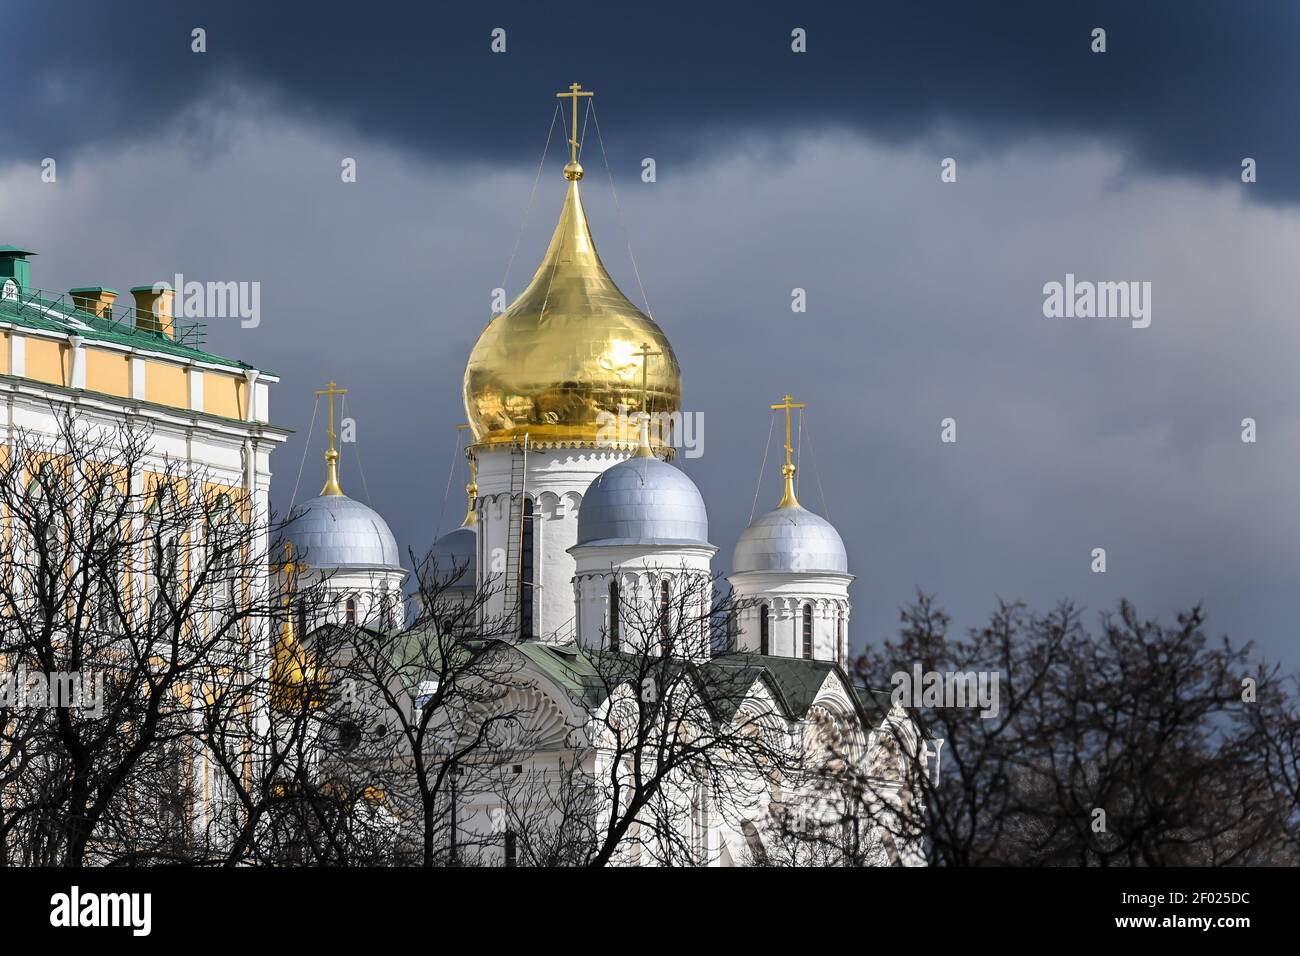 Cathédrales du Kremlin. Dômes dorés de temples en pierre blanche. Banque D'Images